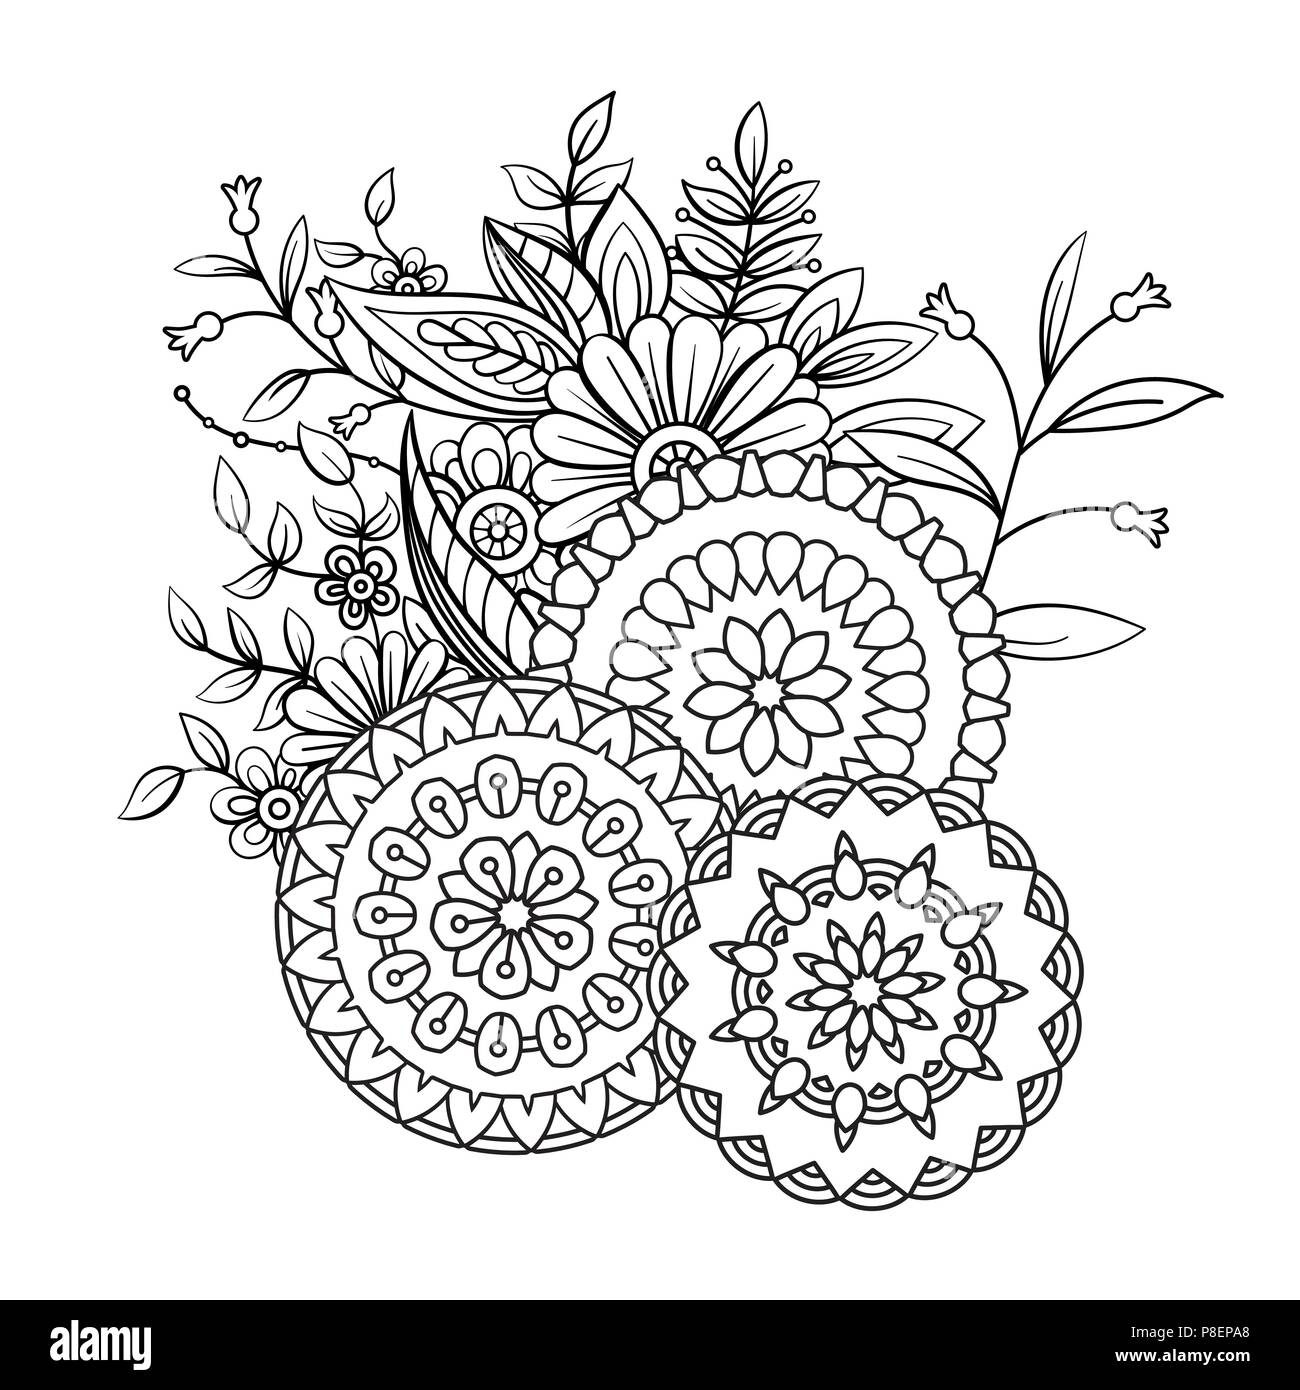 https://c8.alamy.com/compfr/p8epa8/livre-de-coloriage-adultes-page-avec-des-fleurs-et-des-mandalas-motif-floral-en-noir-et-blanc-l-art-therapie-anti-stress-page-a-colorier-hand-drawn-vector-illustration-p8epa8.jpg